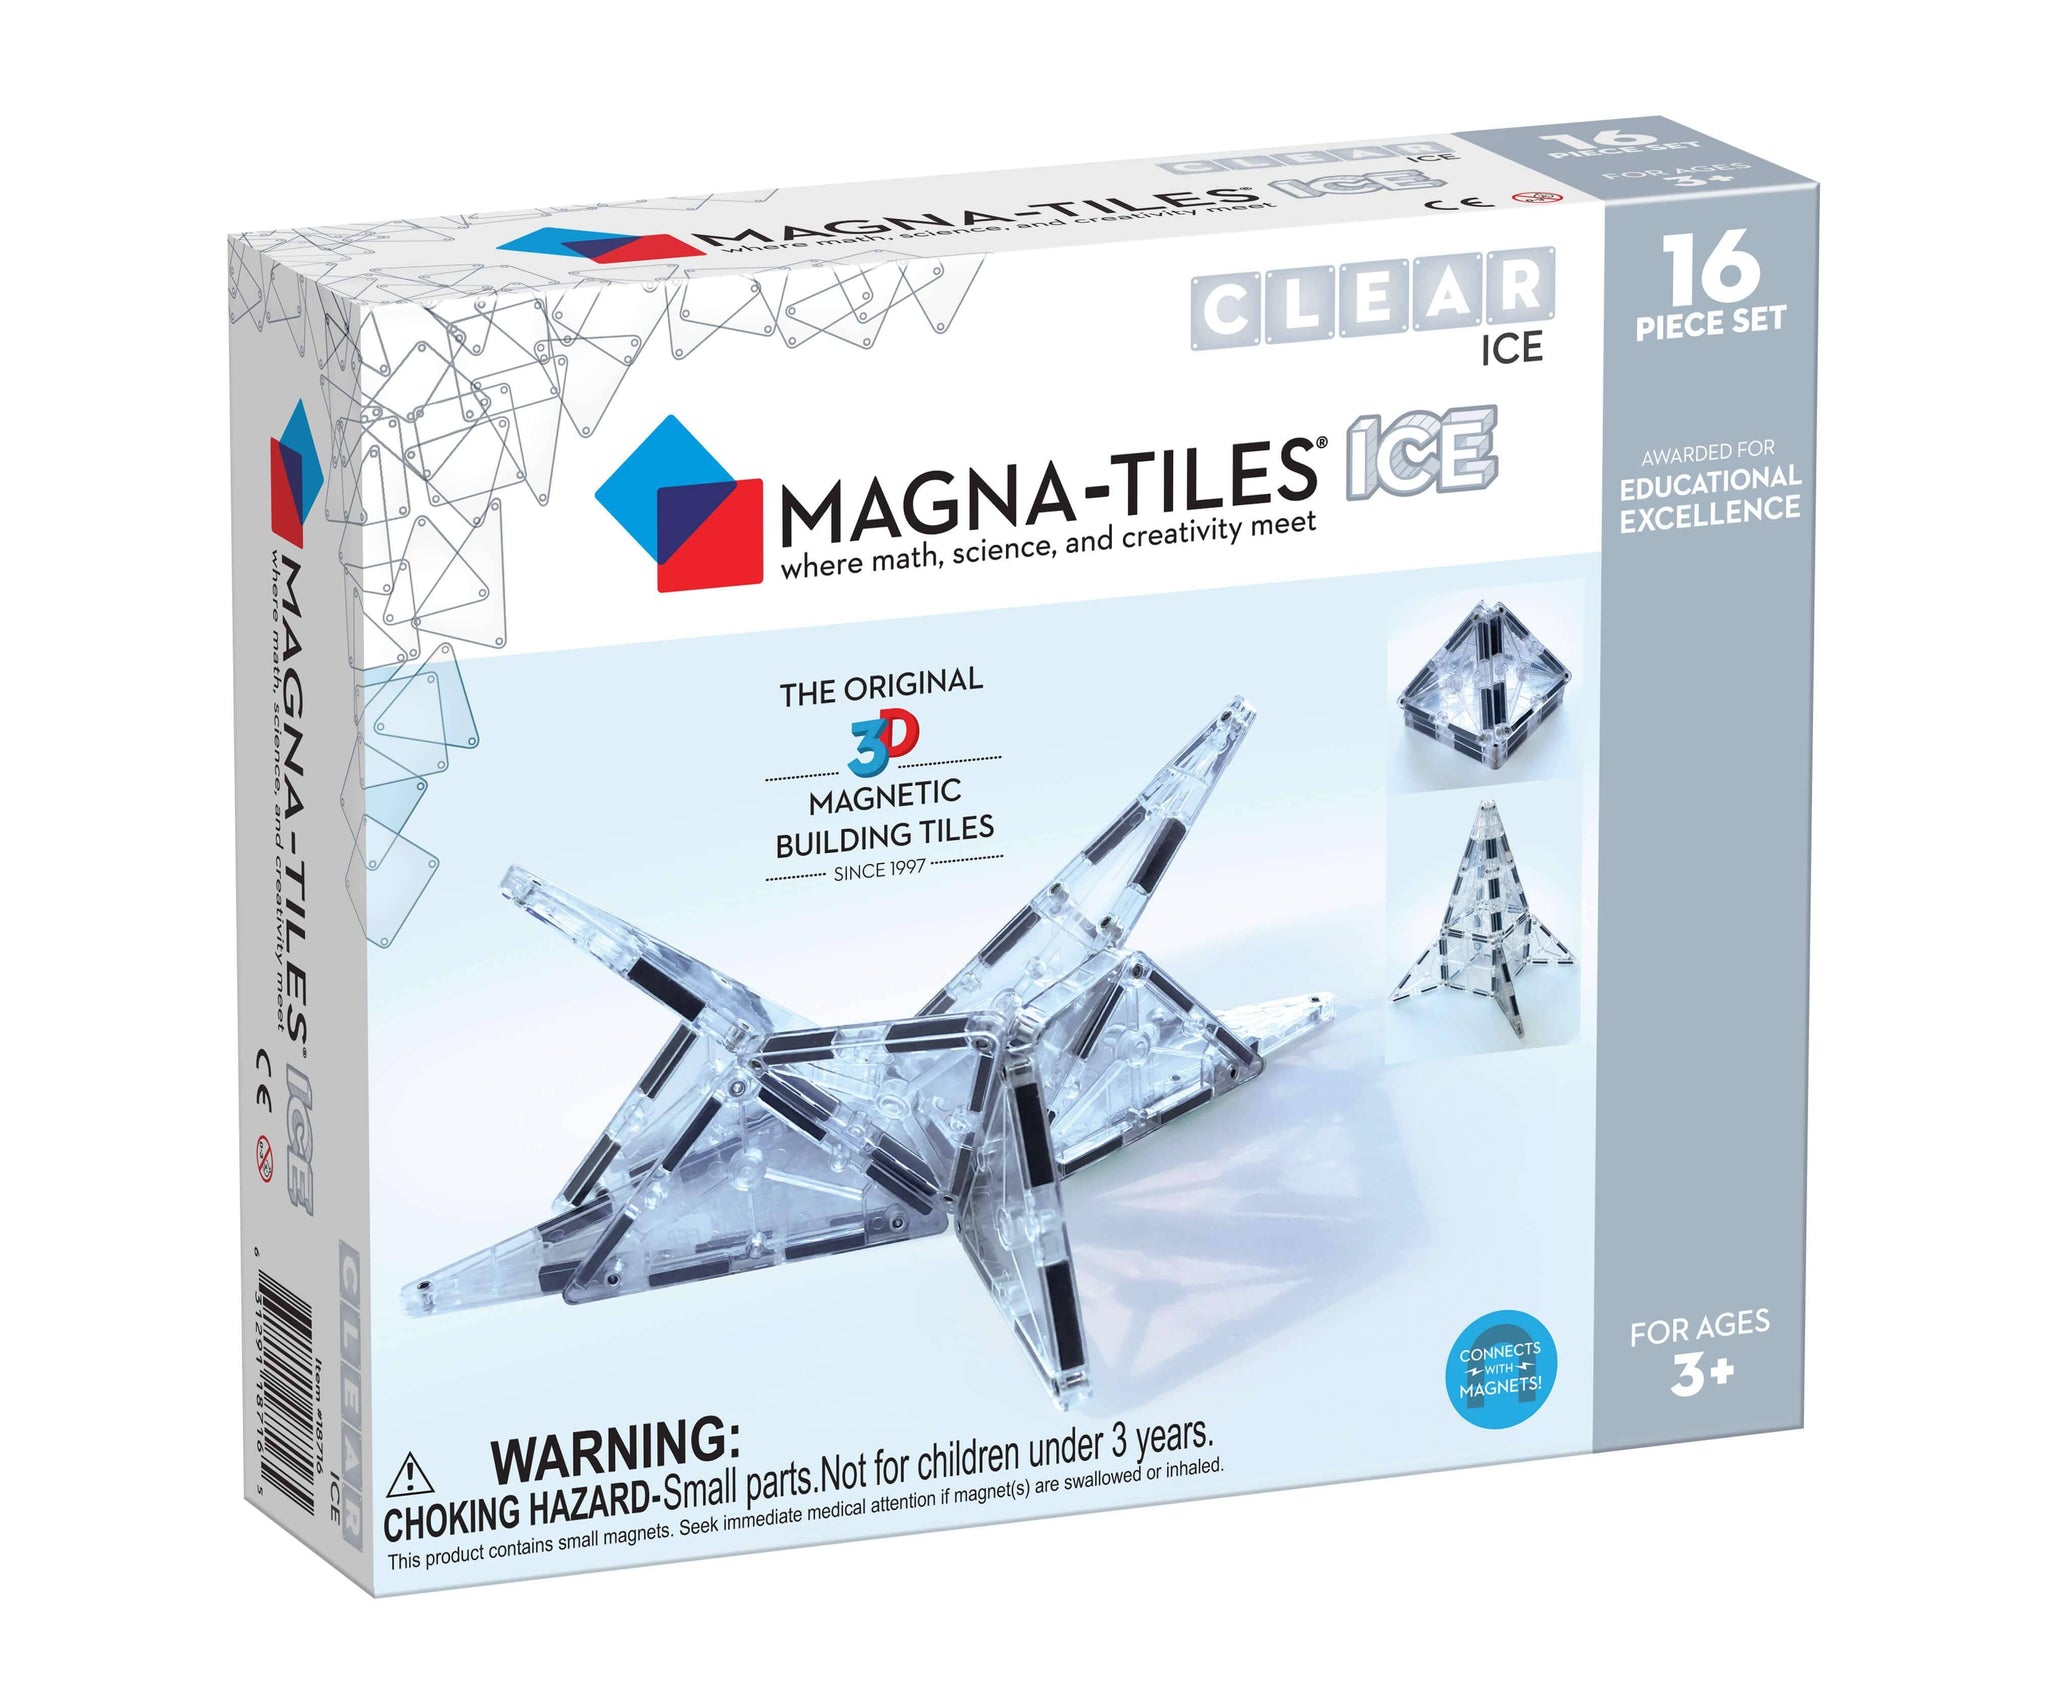 Magna-Tiles ICE 16 Piece Set